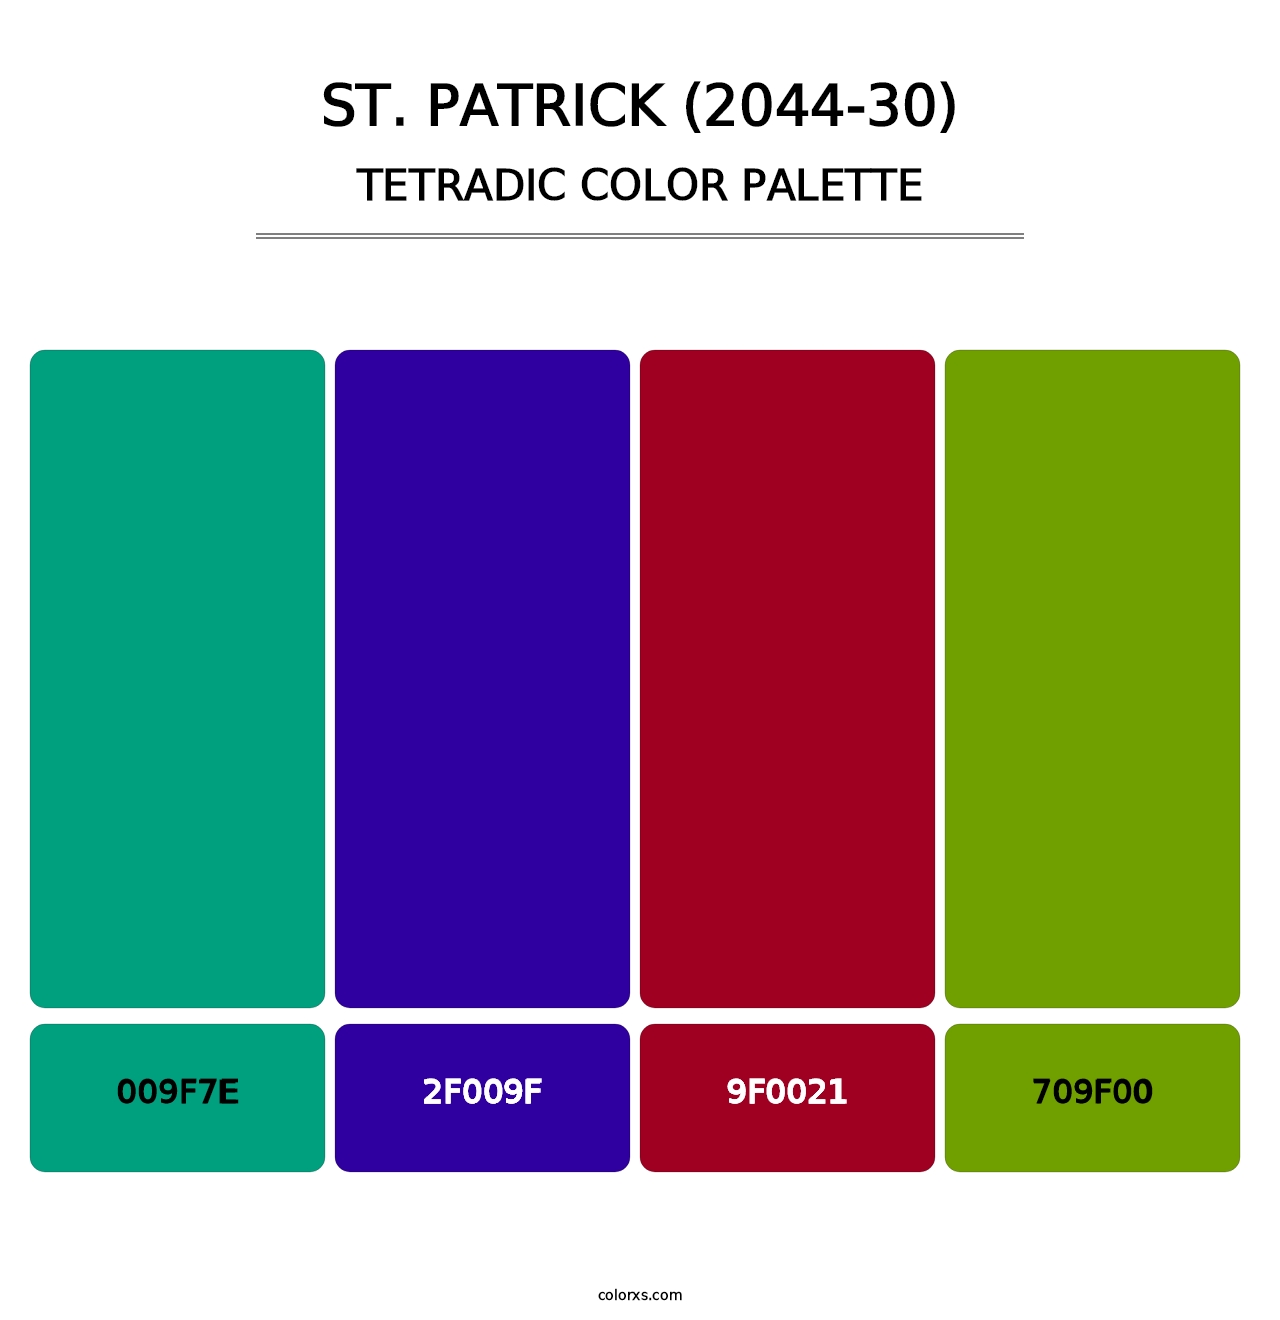 St. Patrick (2044-30) - Tetradic Color Palette